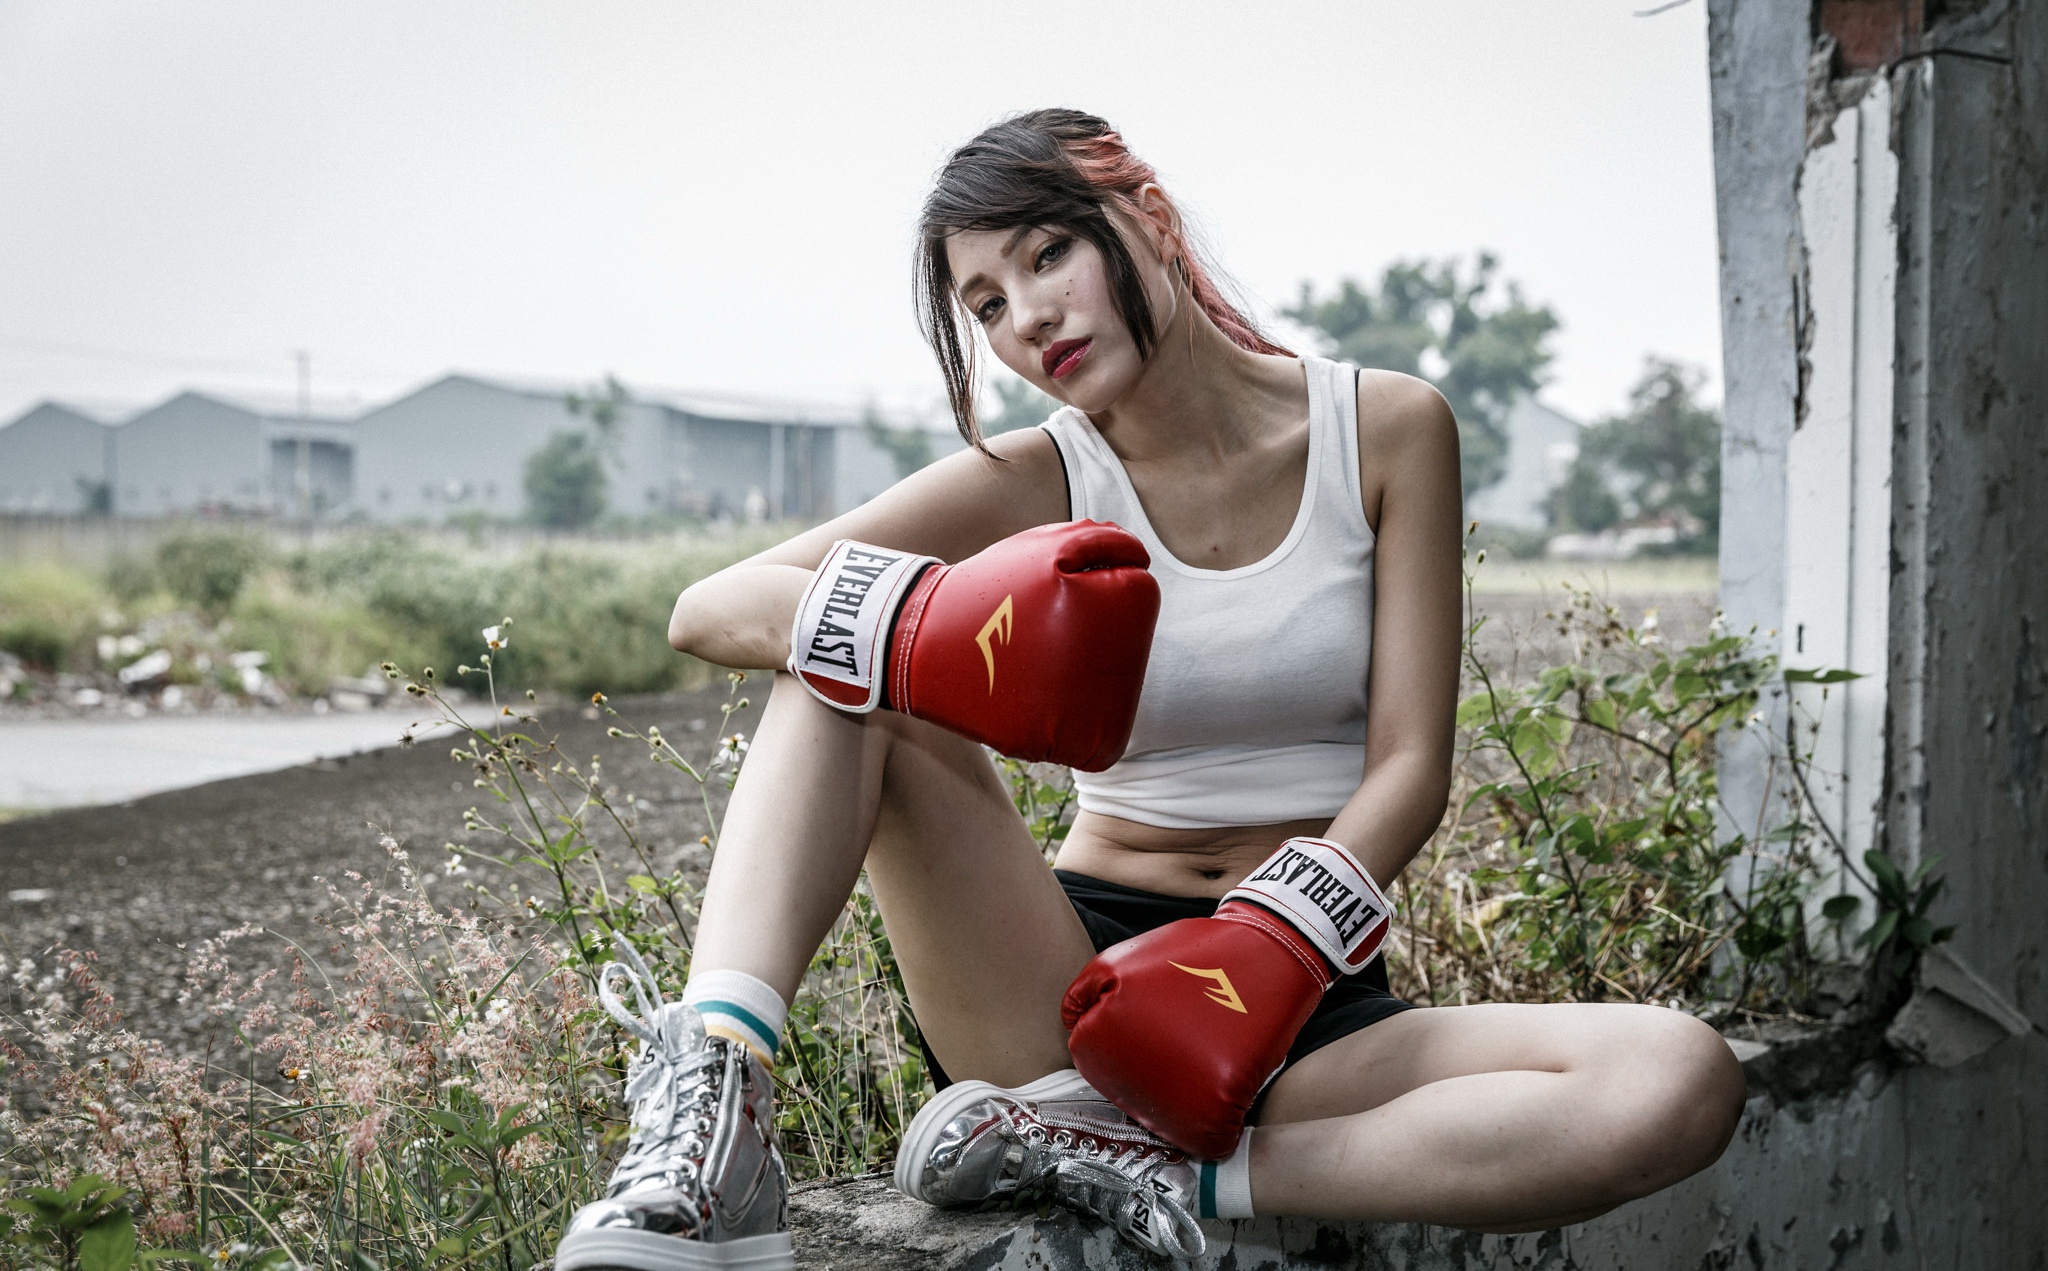 Обнаженная спортсменка в боксерских перчатках